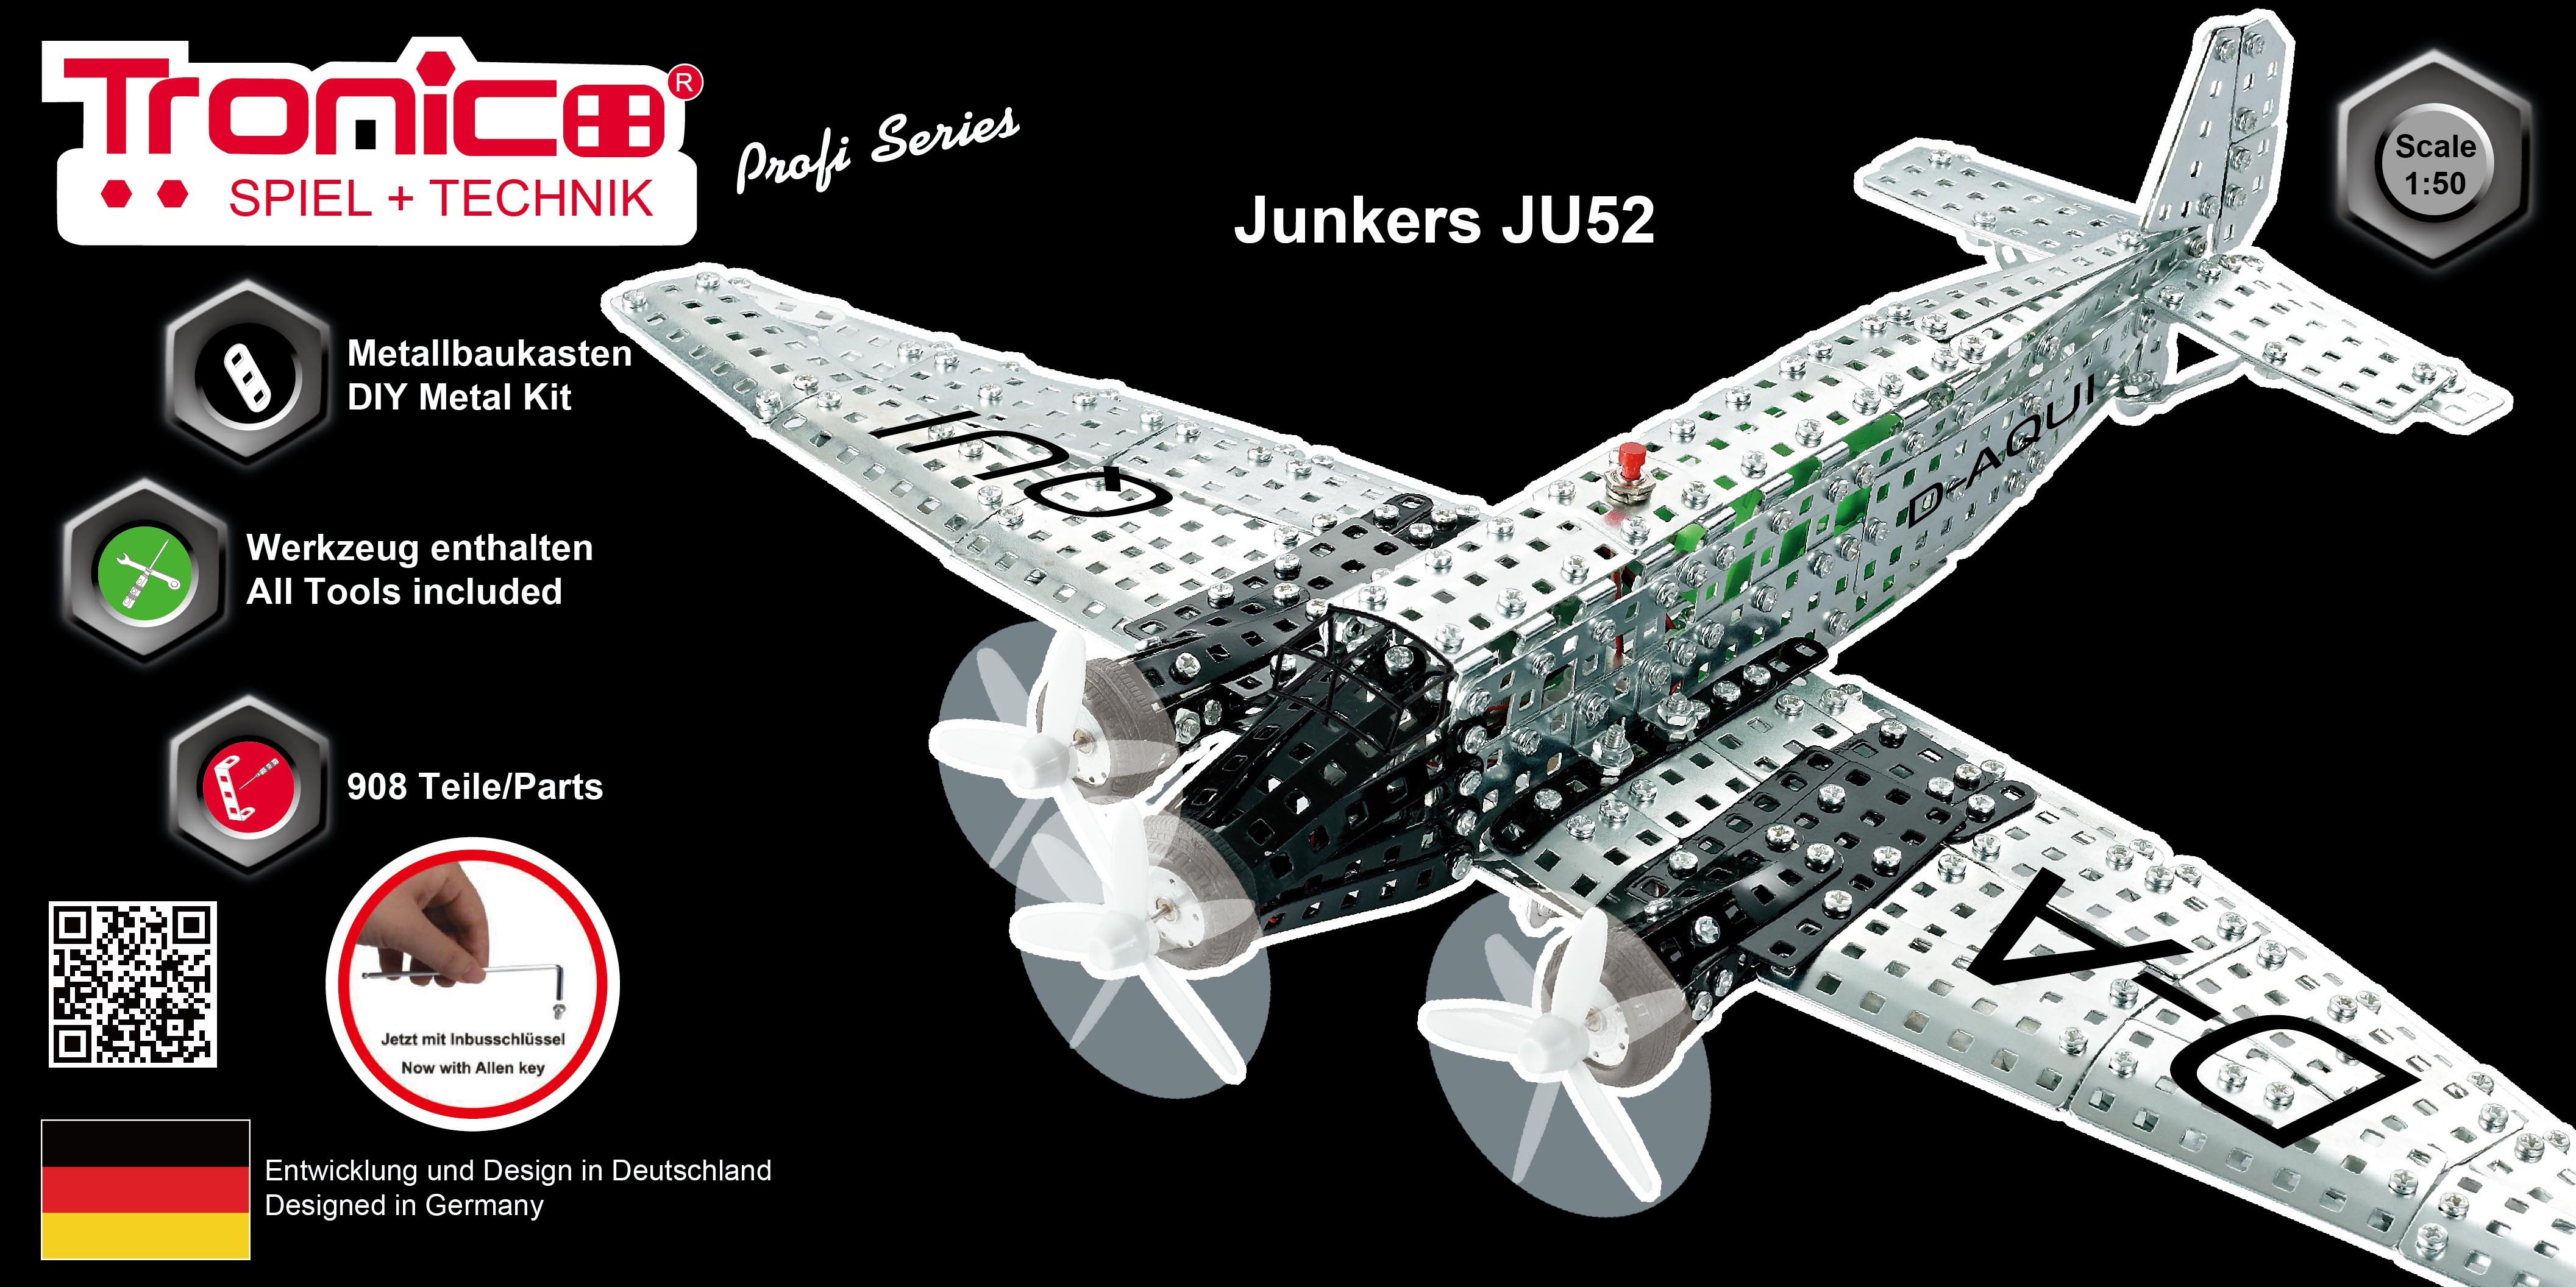 Tronico Profi Series - Airplane Jukers JU52